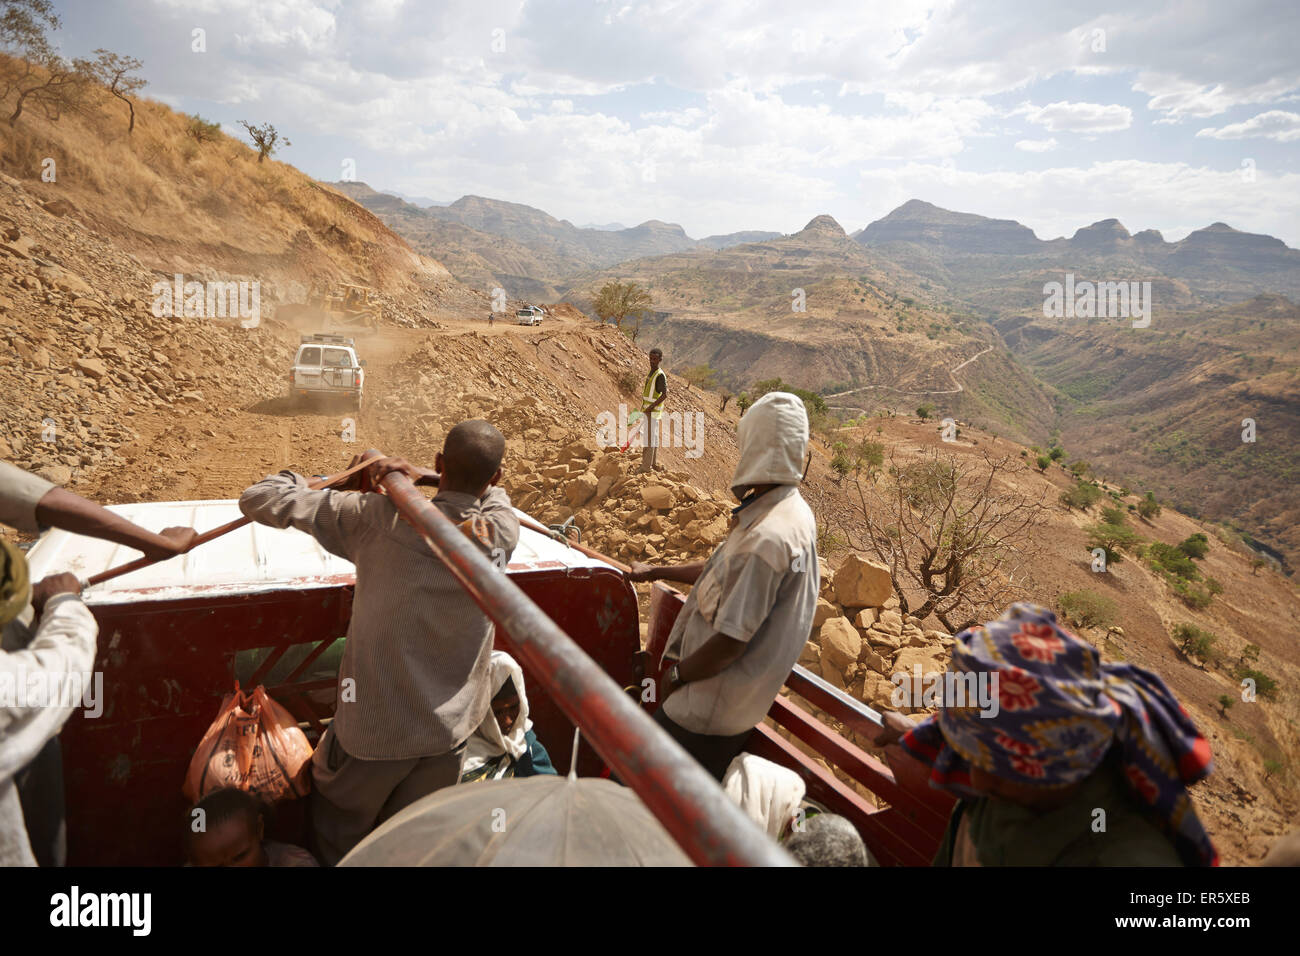 Passengers on the loading area of a truck, road construction zone, near Adi Ar Kay, Amhara region, Ethiopia Stock Photo